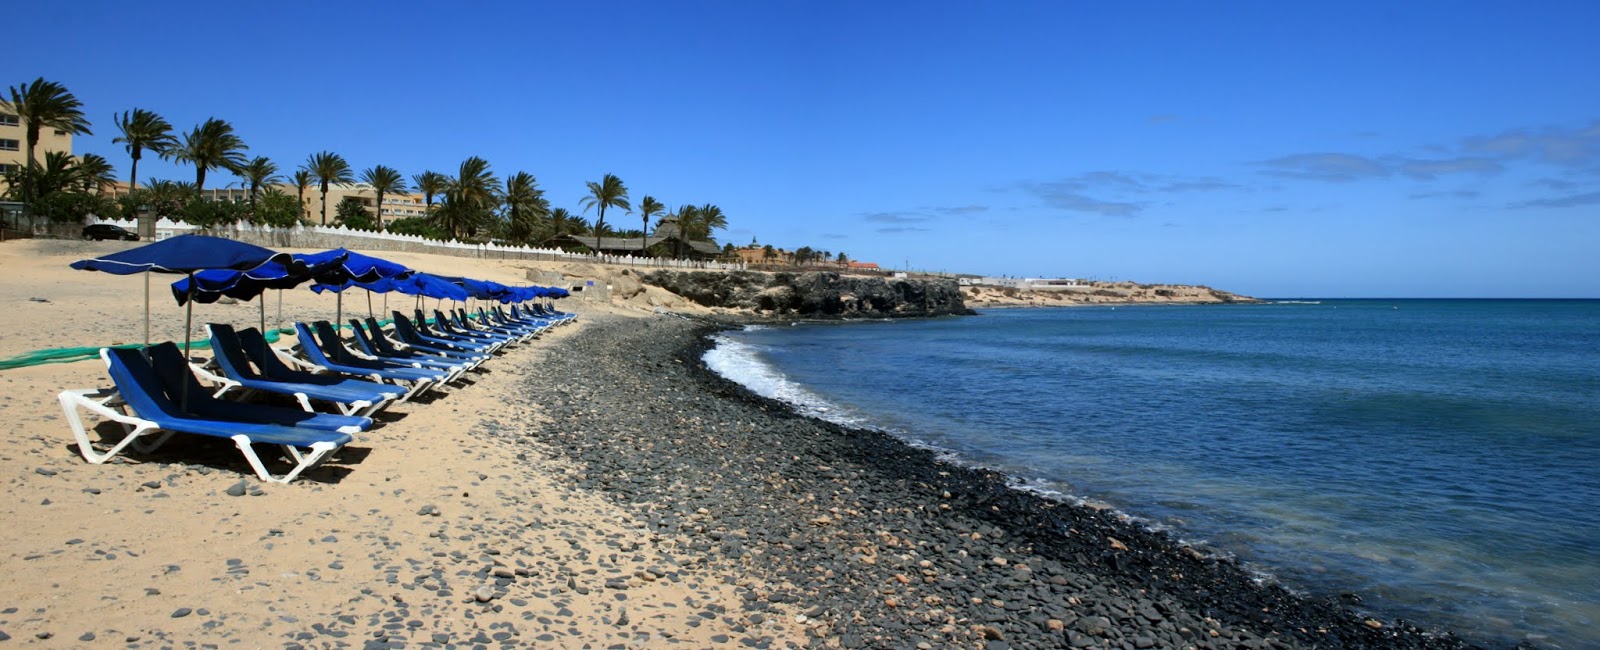 Playa de los Molinos'in fotoğrafı küçük koy ile birlikte